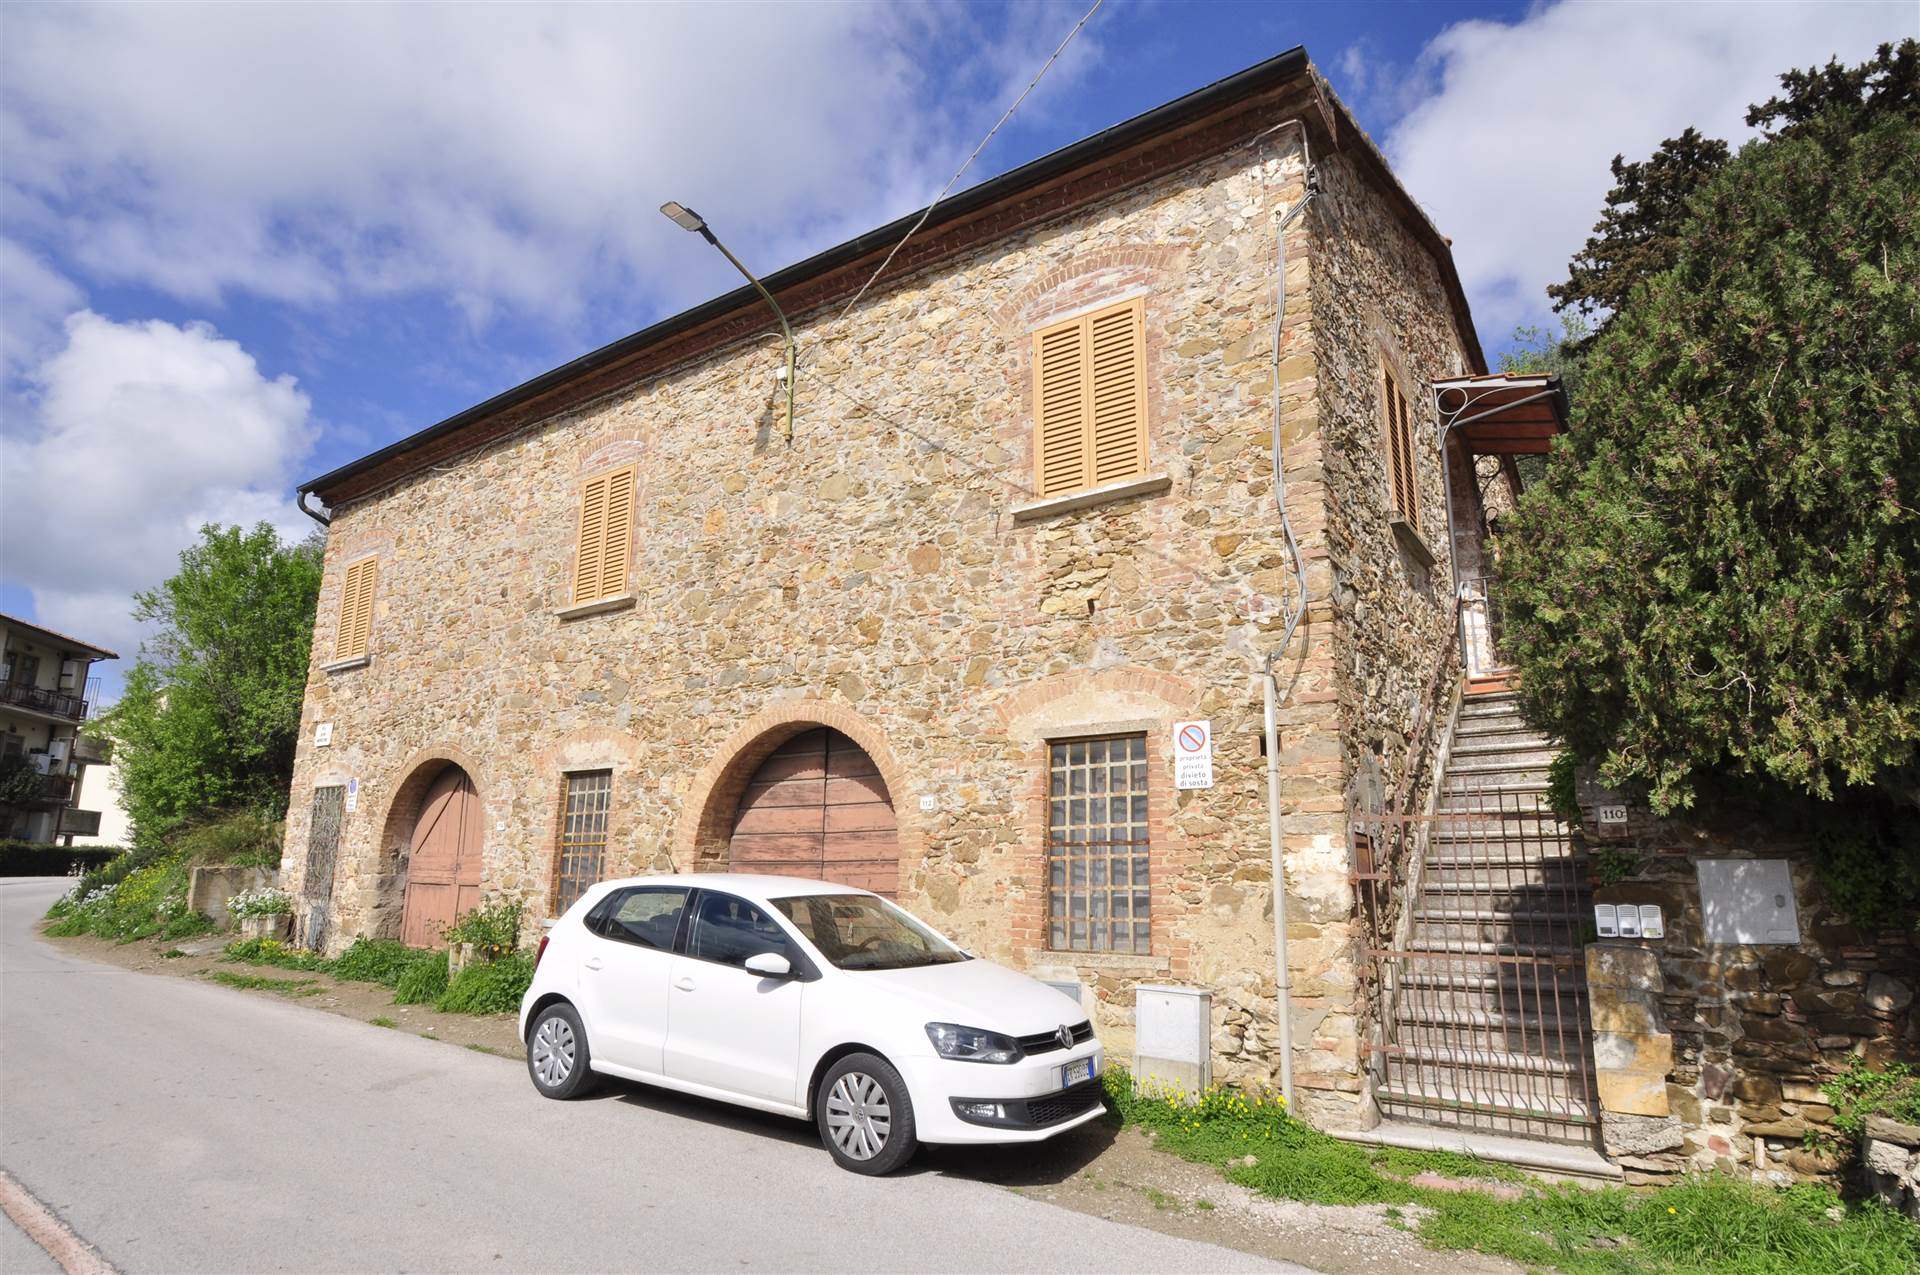 Rustico / Casale in vendita a Suvereto, 6 locali, prezzo € 420.000 | PortaleAgenzieImmobiliari.it